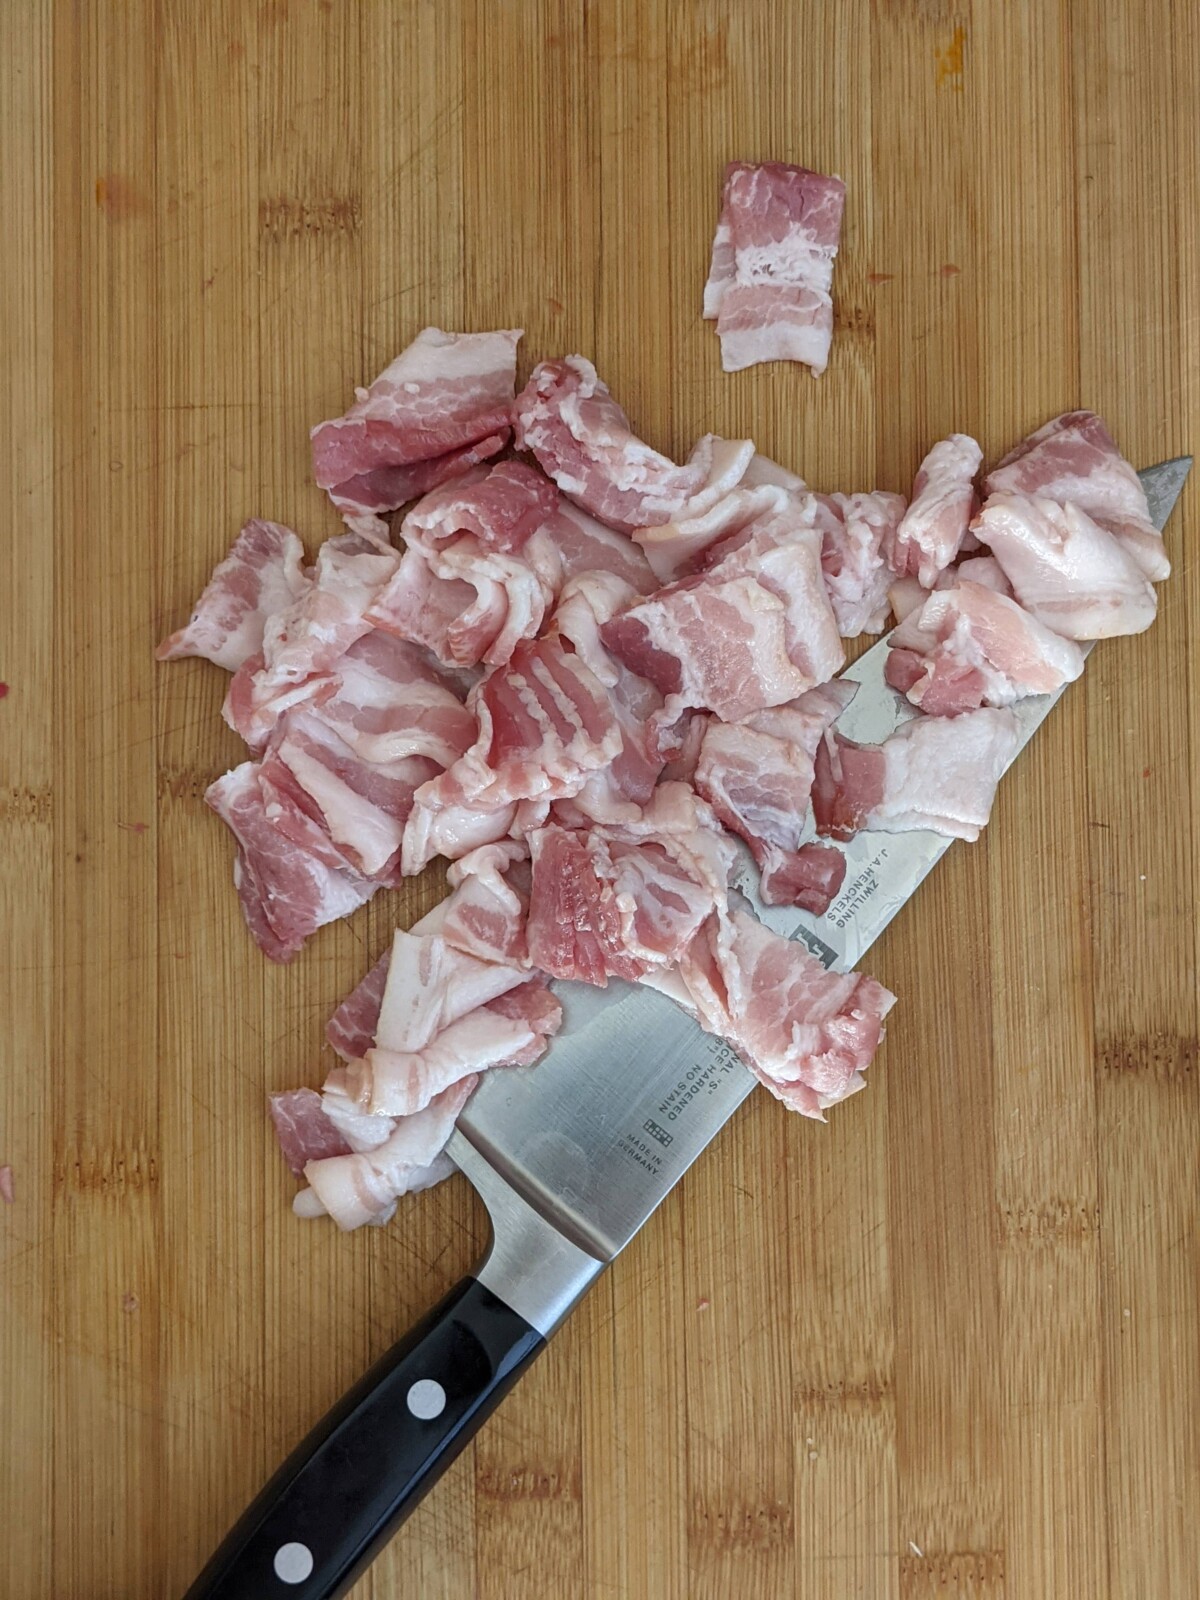 Chopped bacon on board.